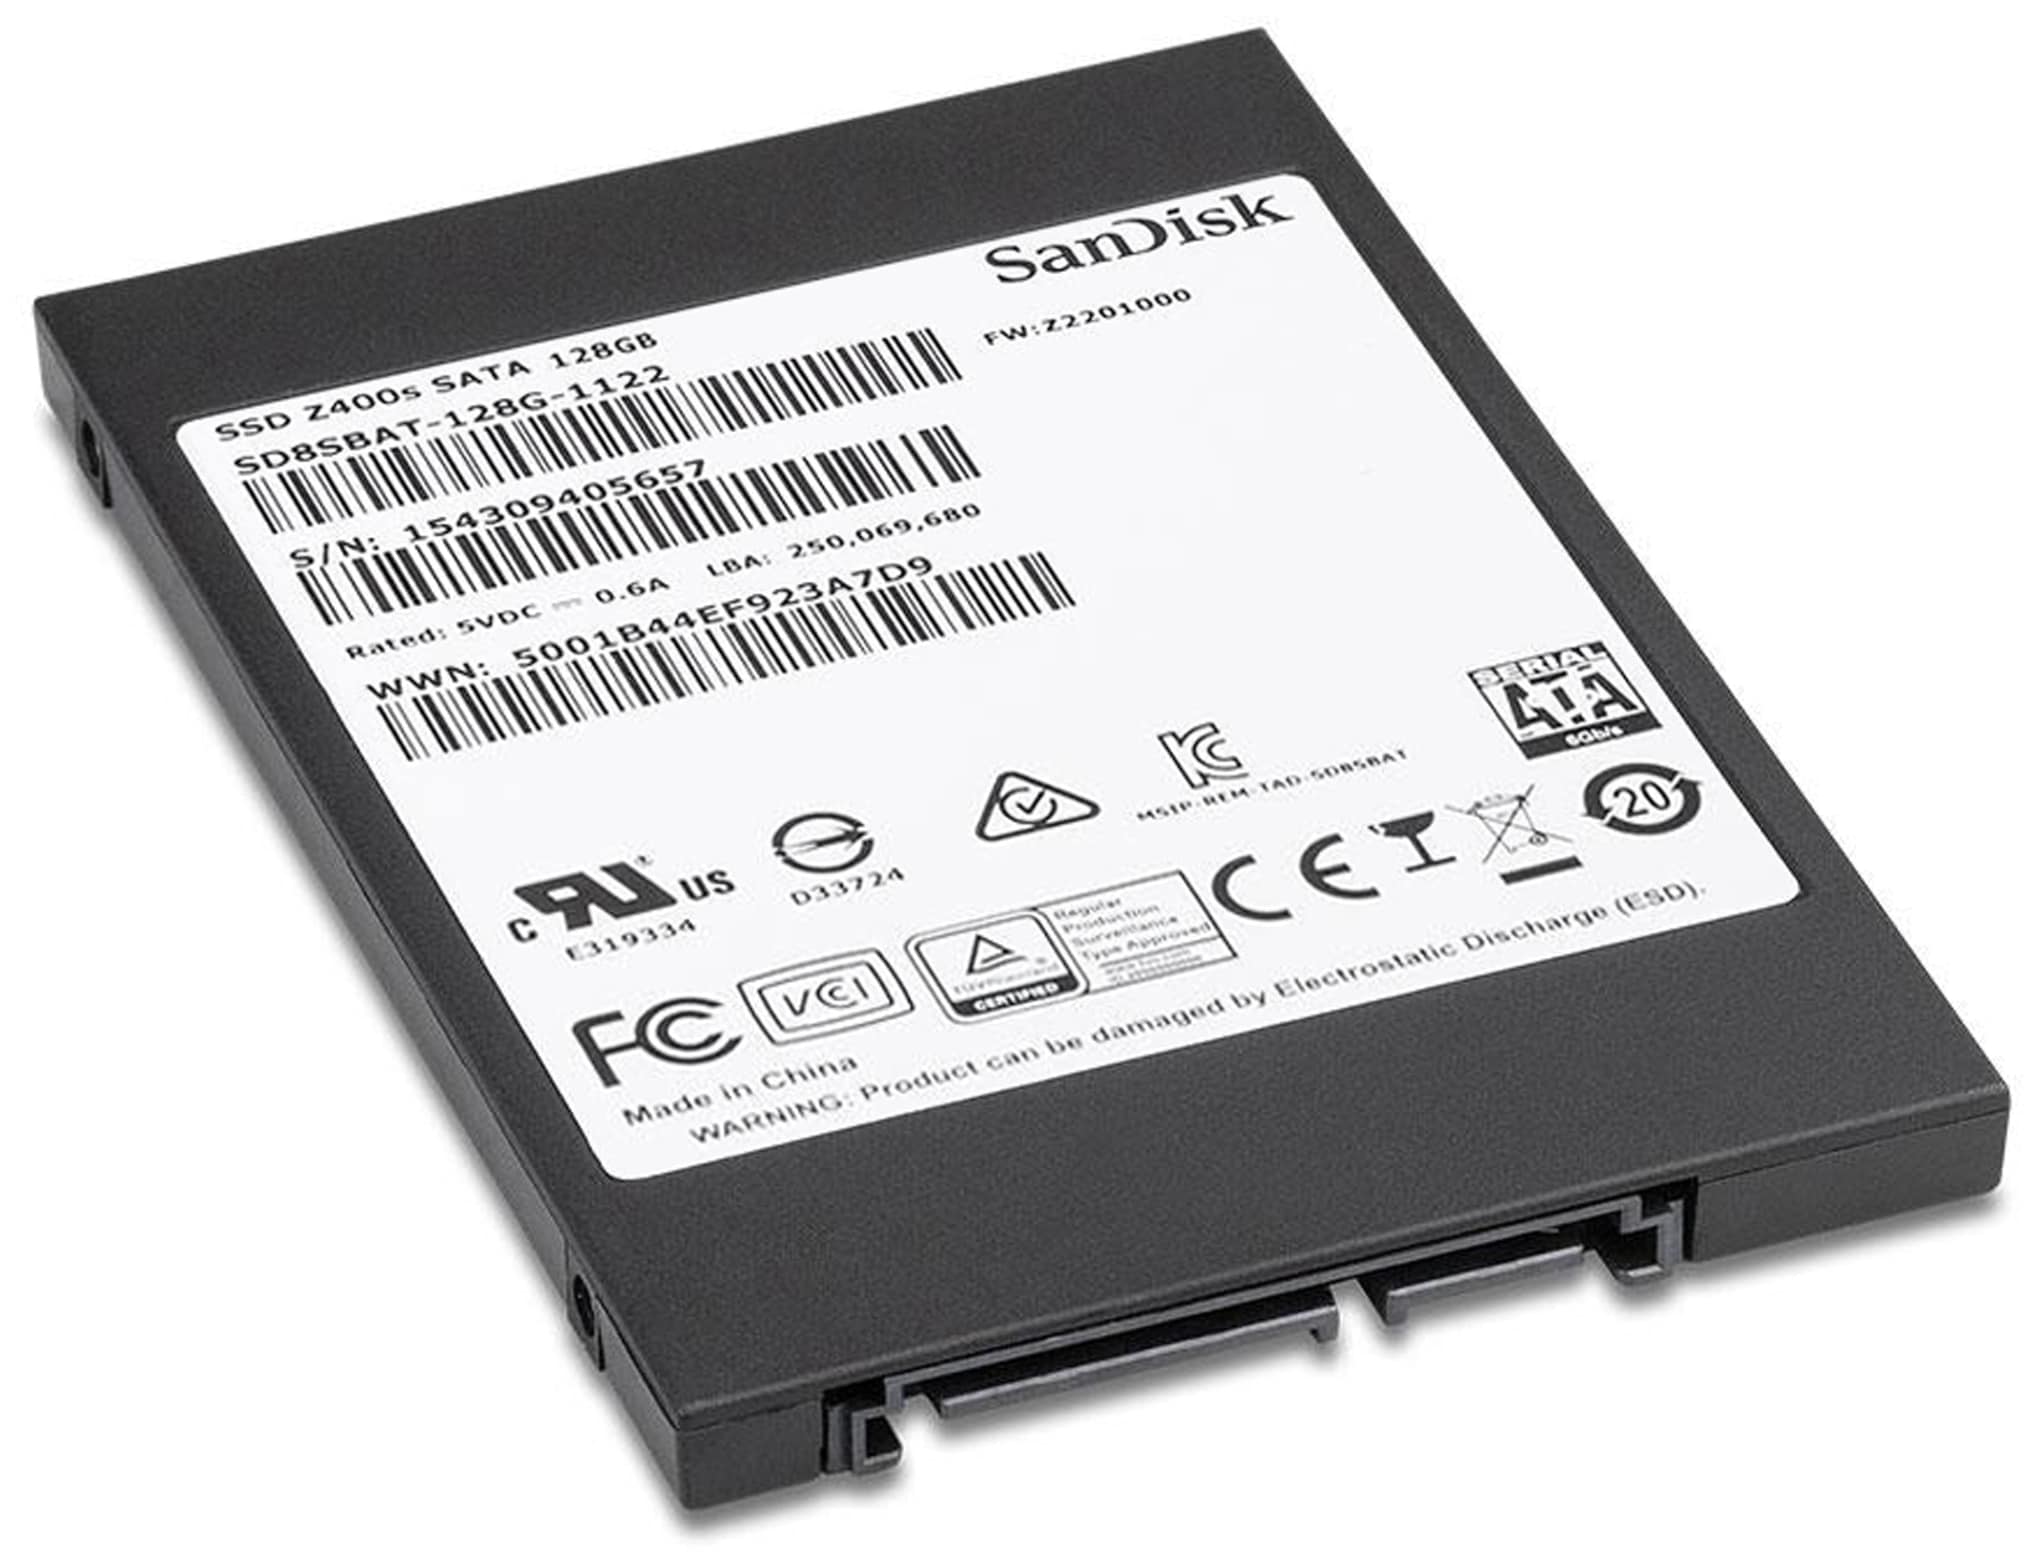 SanDisk SSD Z400s 64 GB, 2,5", gebraucht/pulled